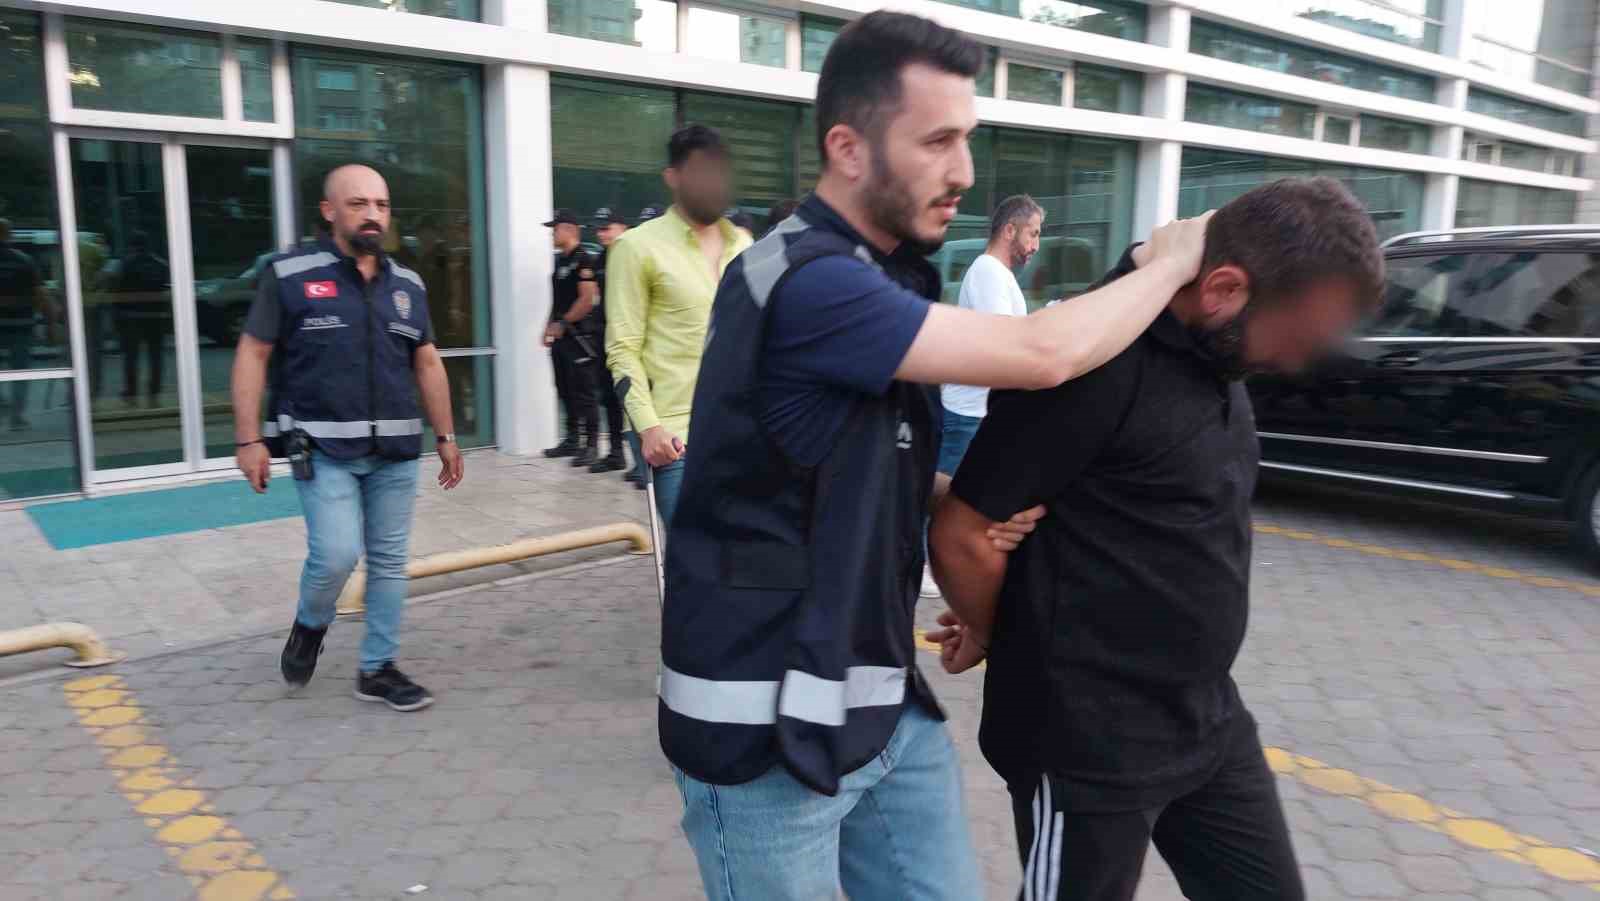 Samsun’da 6 kişinin yaralandığı silahlı çatışmada 2 kişi tutuklandı